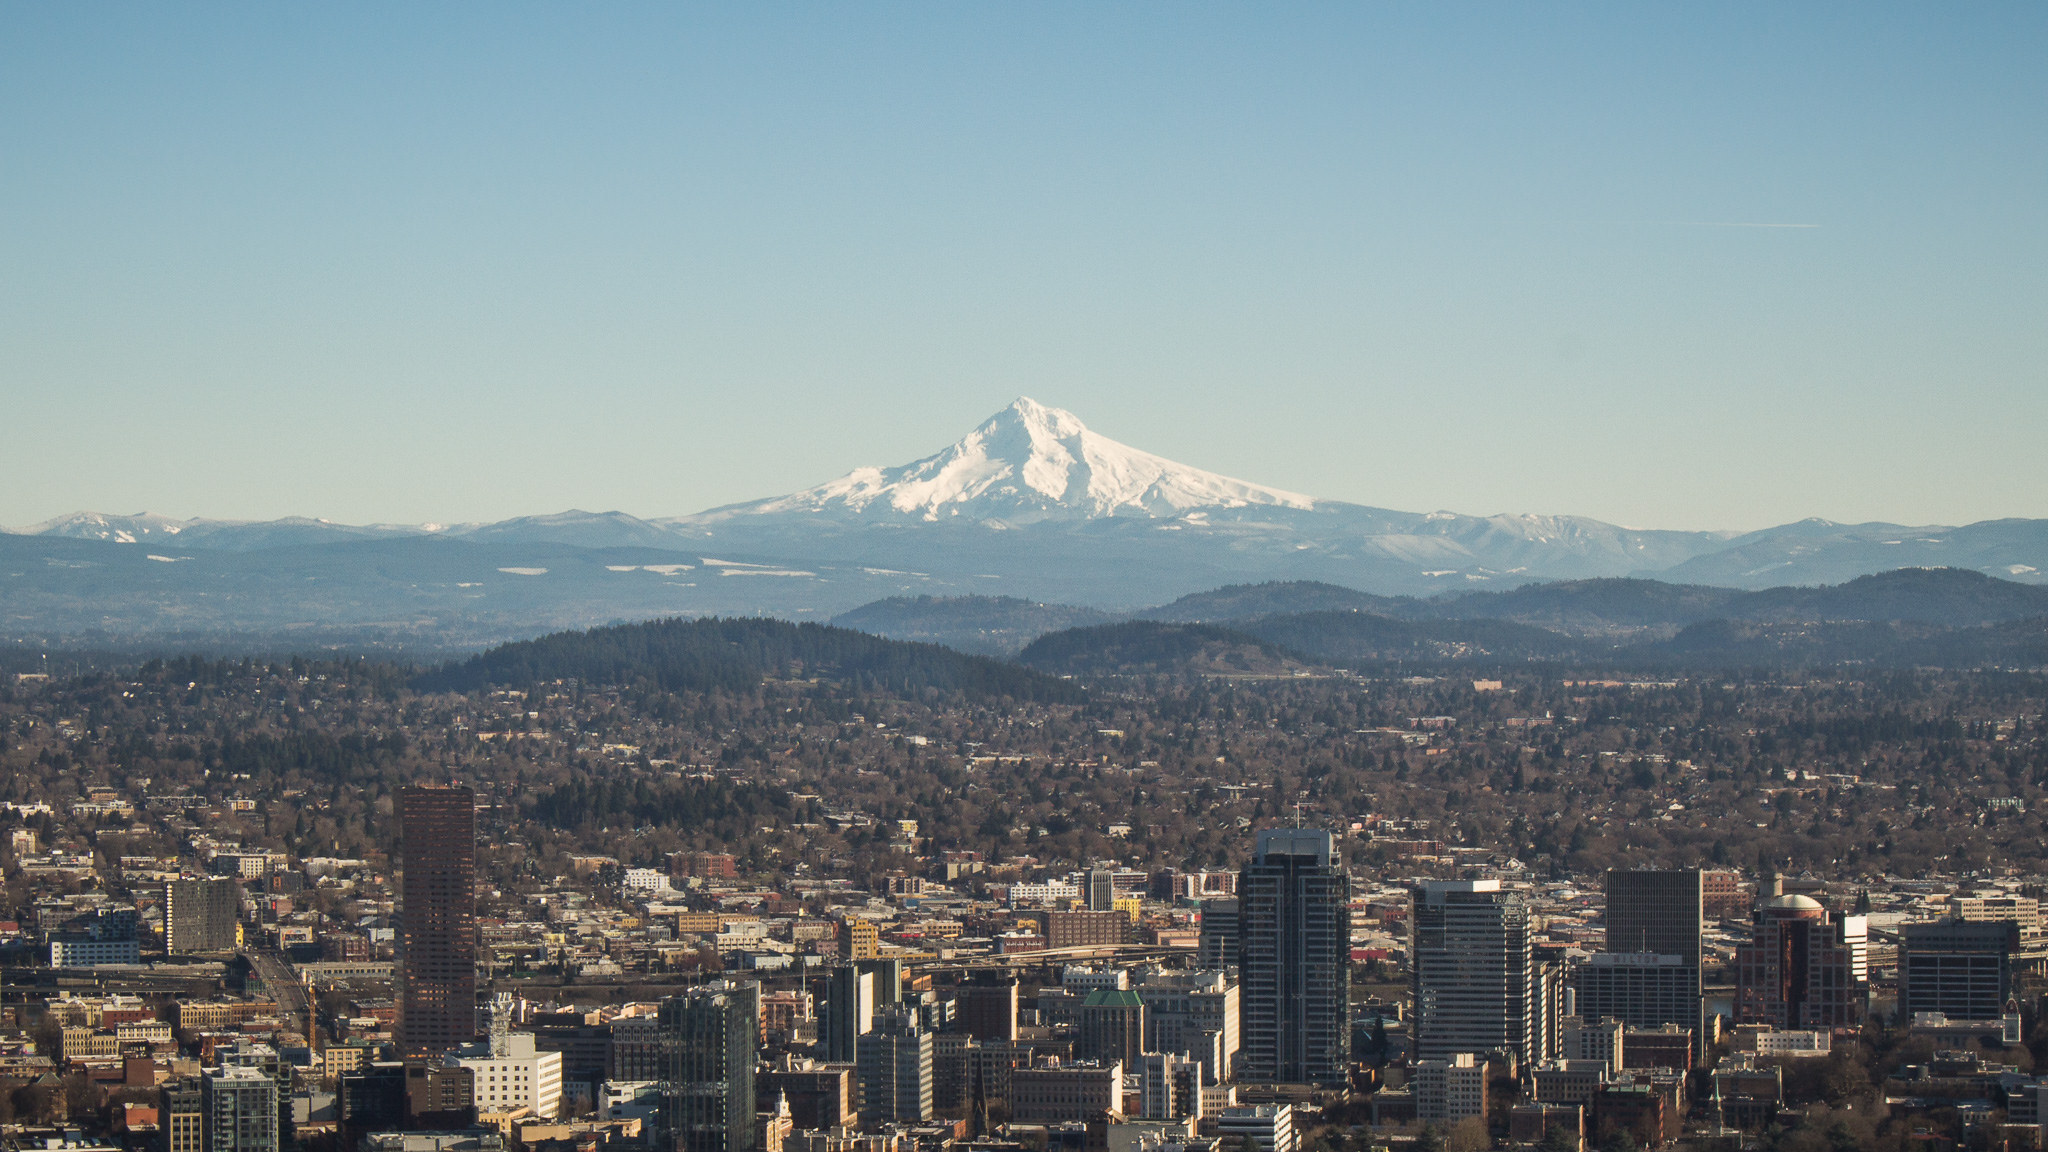 Portland, Oregon and Mount Hood